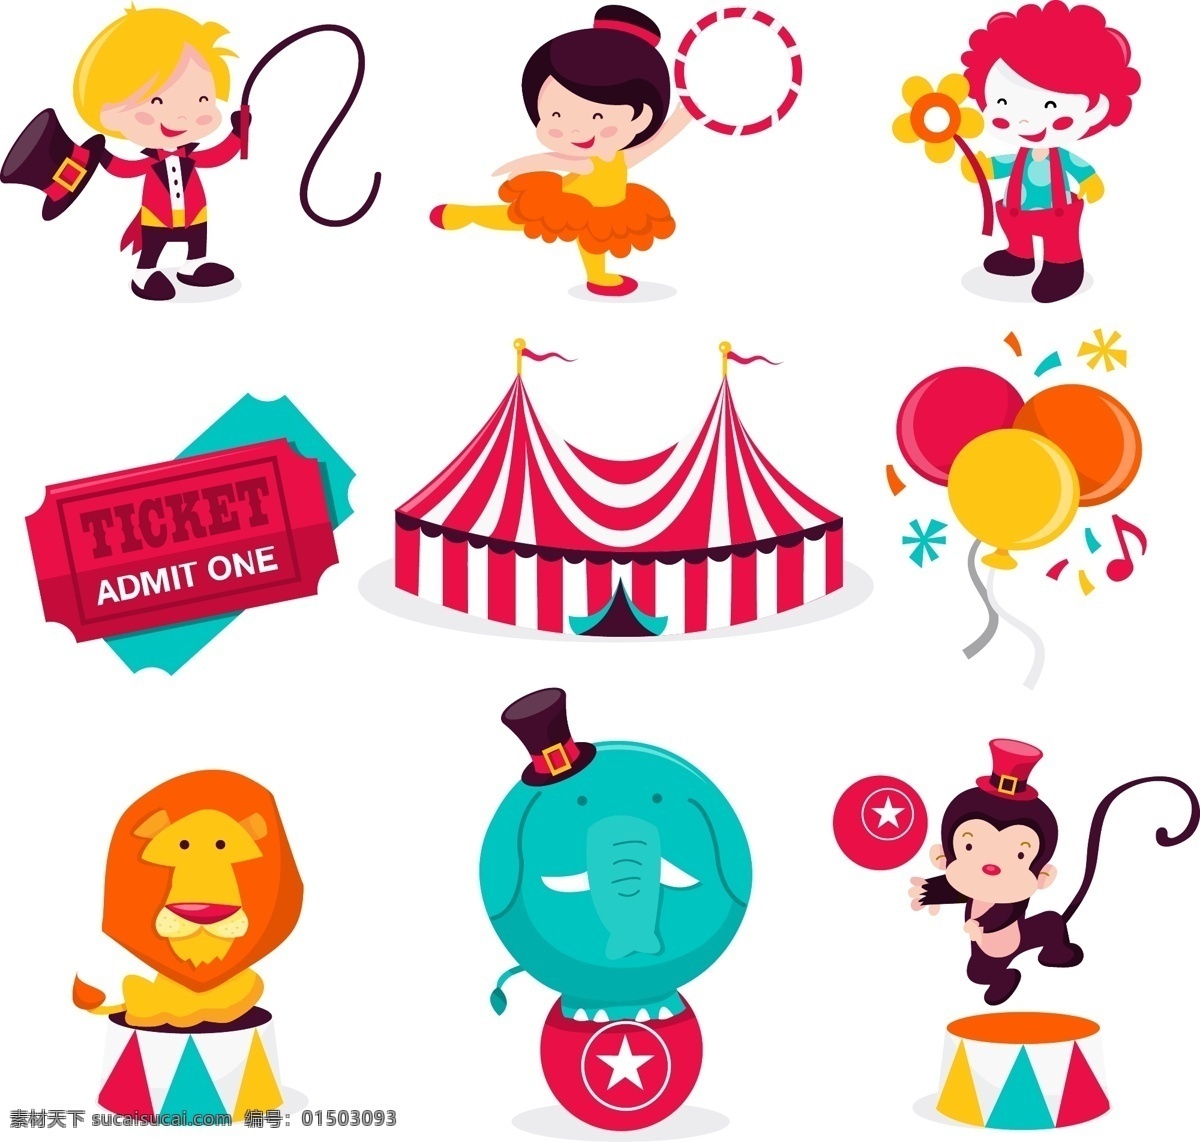 小丑 丑角 玩具 玩偶 卡通 游乐园 马戏团 儿童乐园 小丑素材 恋人 人物卡通 白色